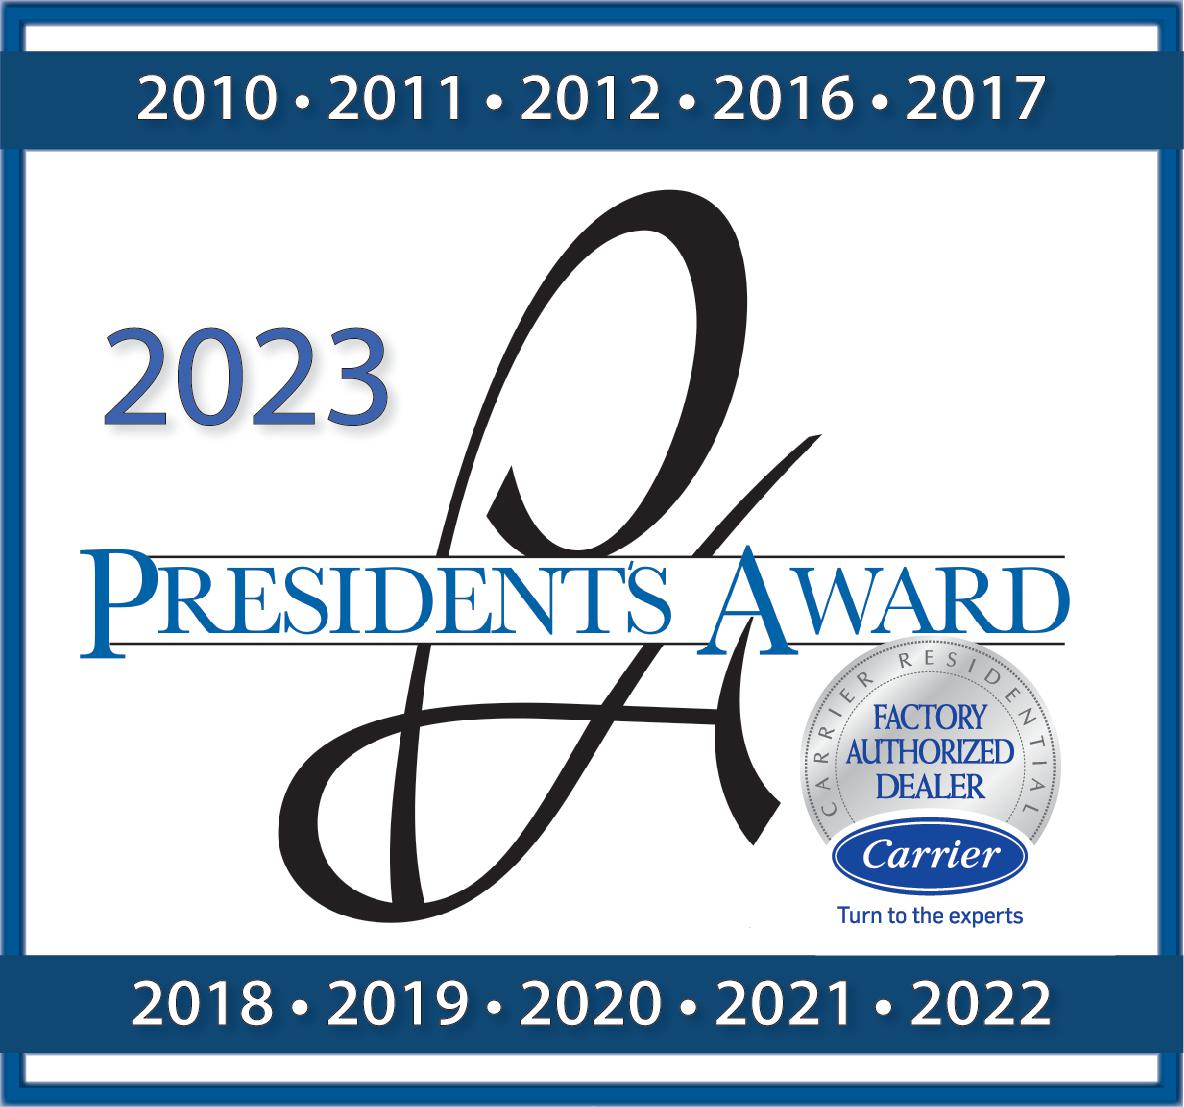 Carrier's President's Award